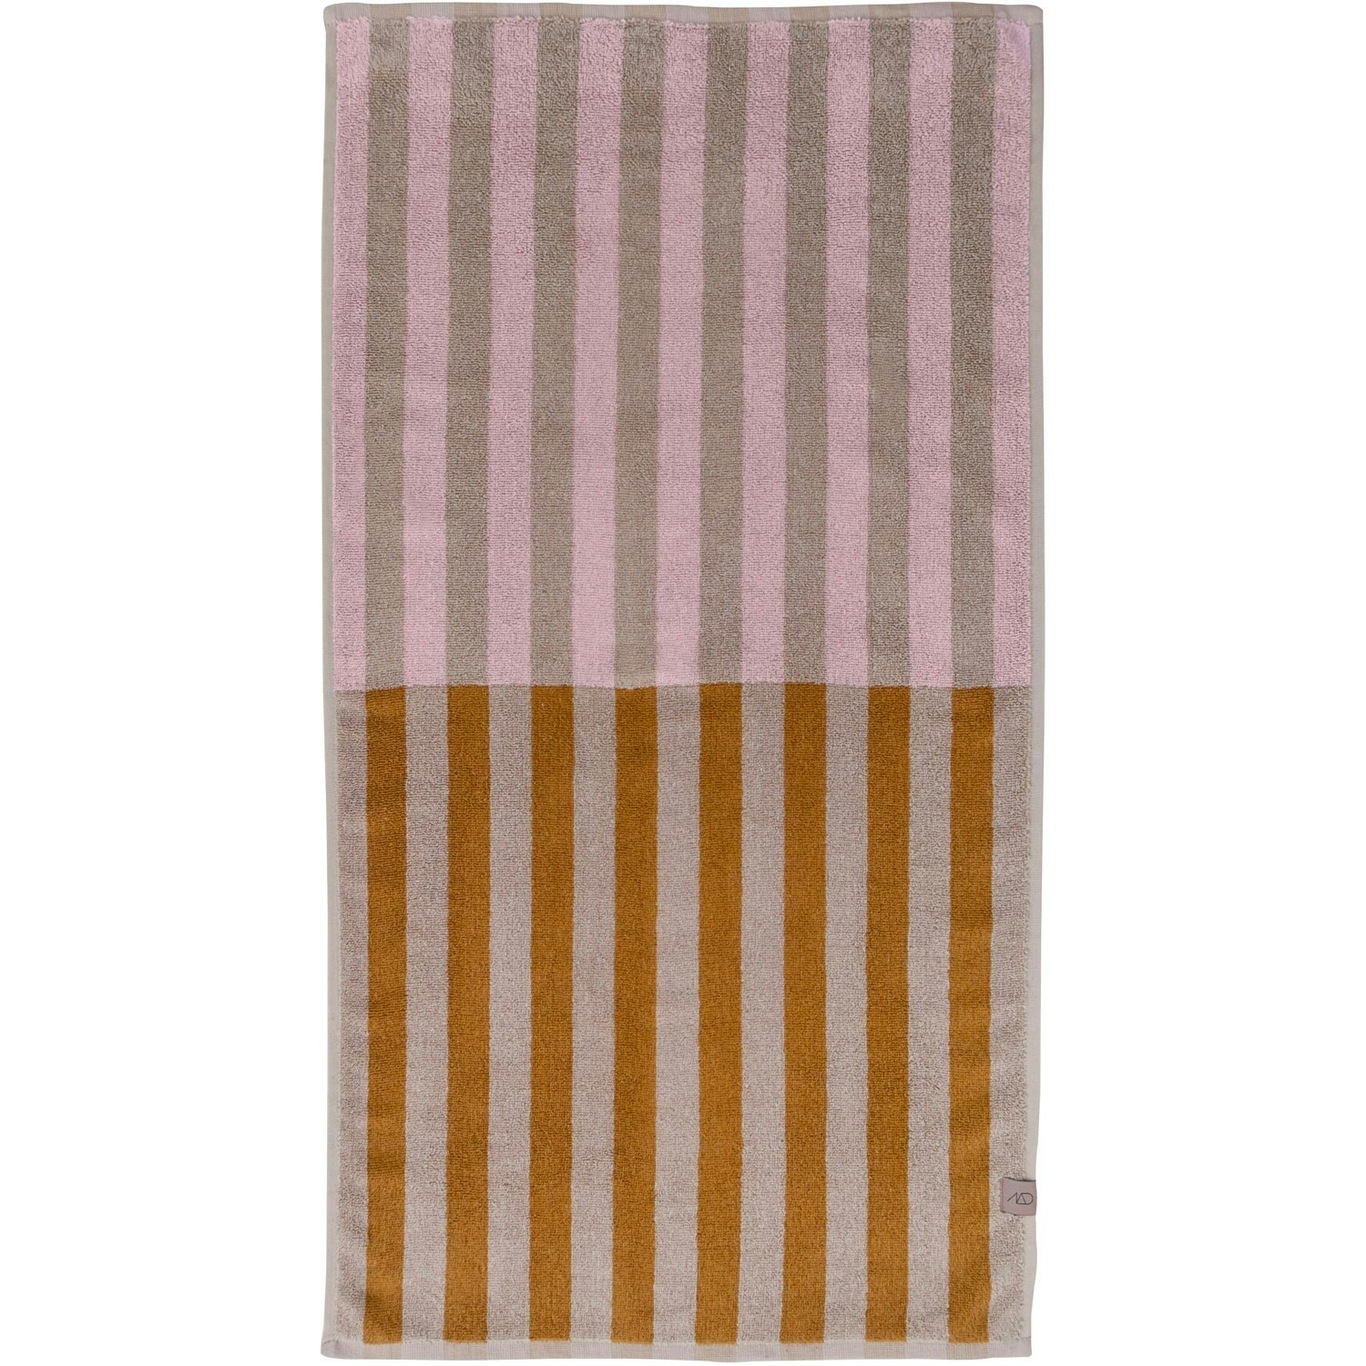 Disorder Towel 40x55 cm, Powder Rose